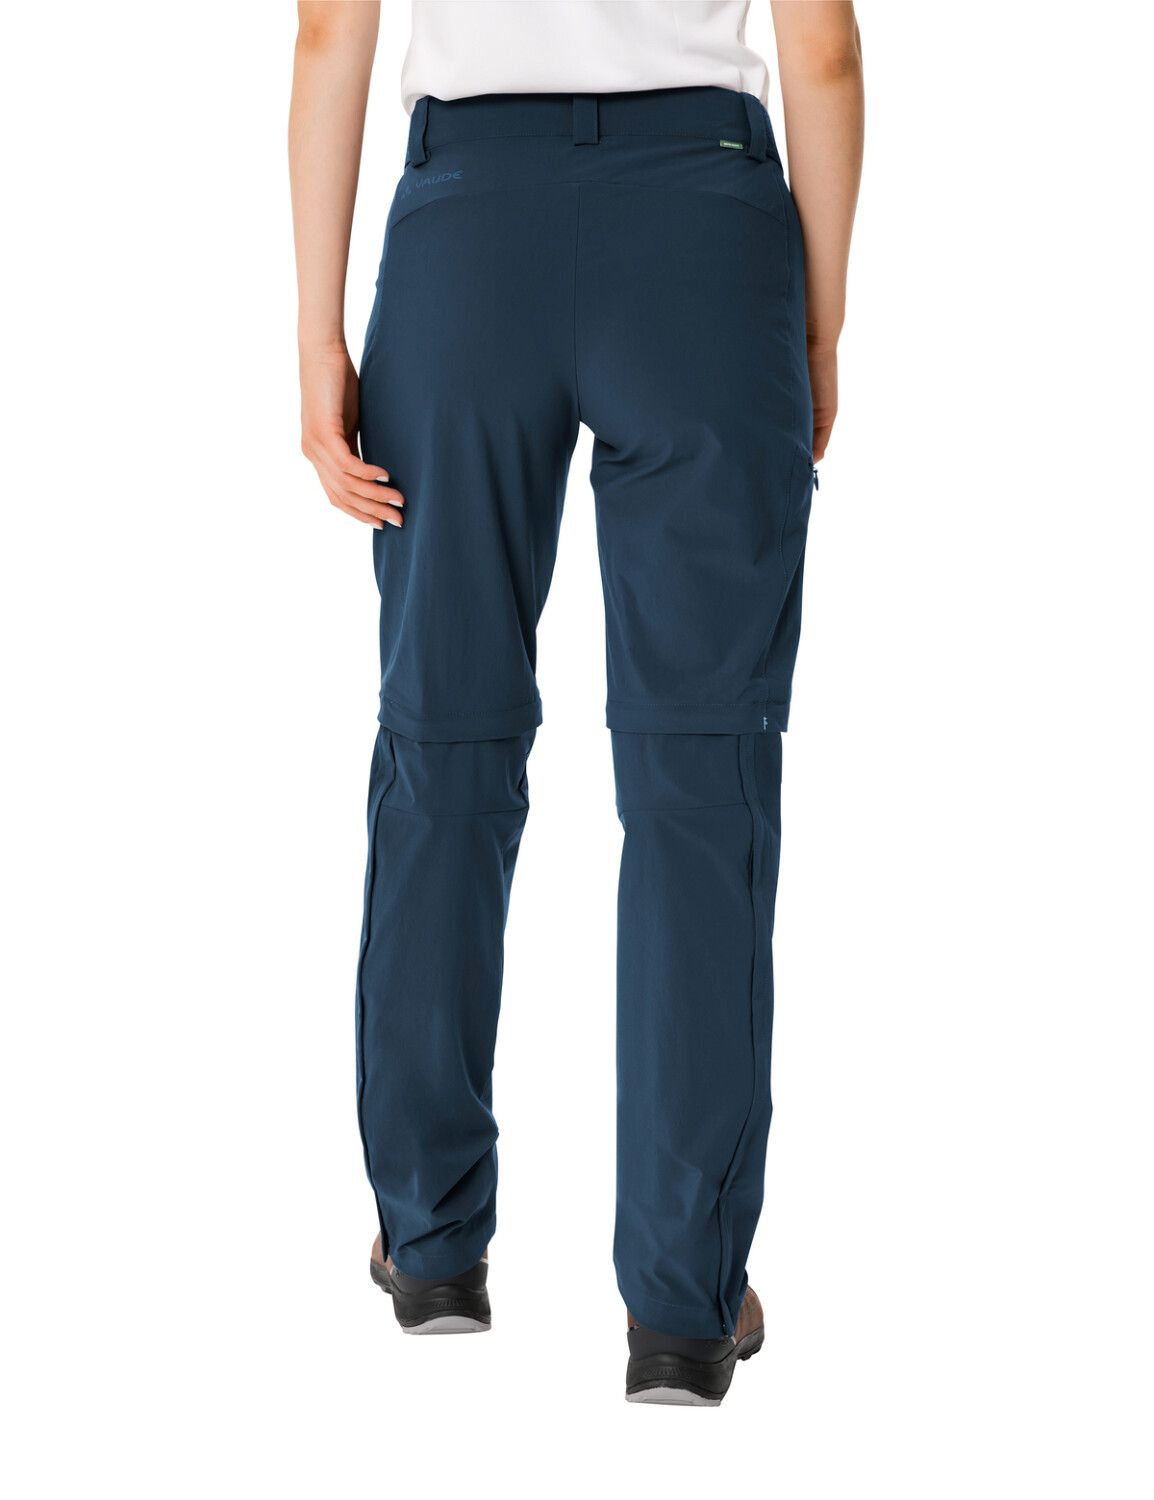 VAUDE Women's Farley Stretch ZO T-Zip Pants II (Bild 11)